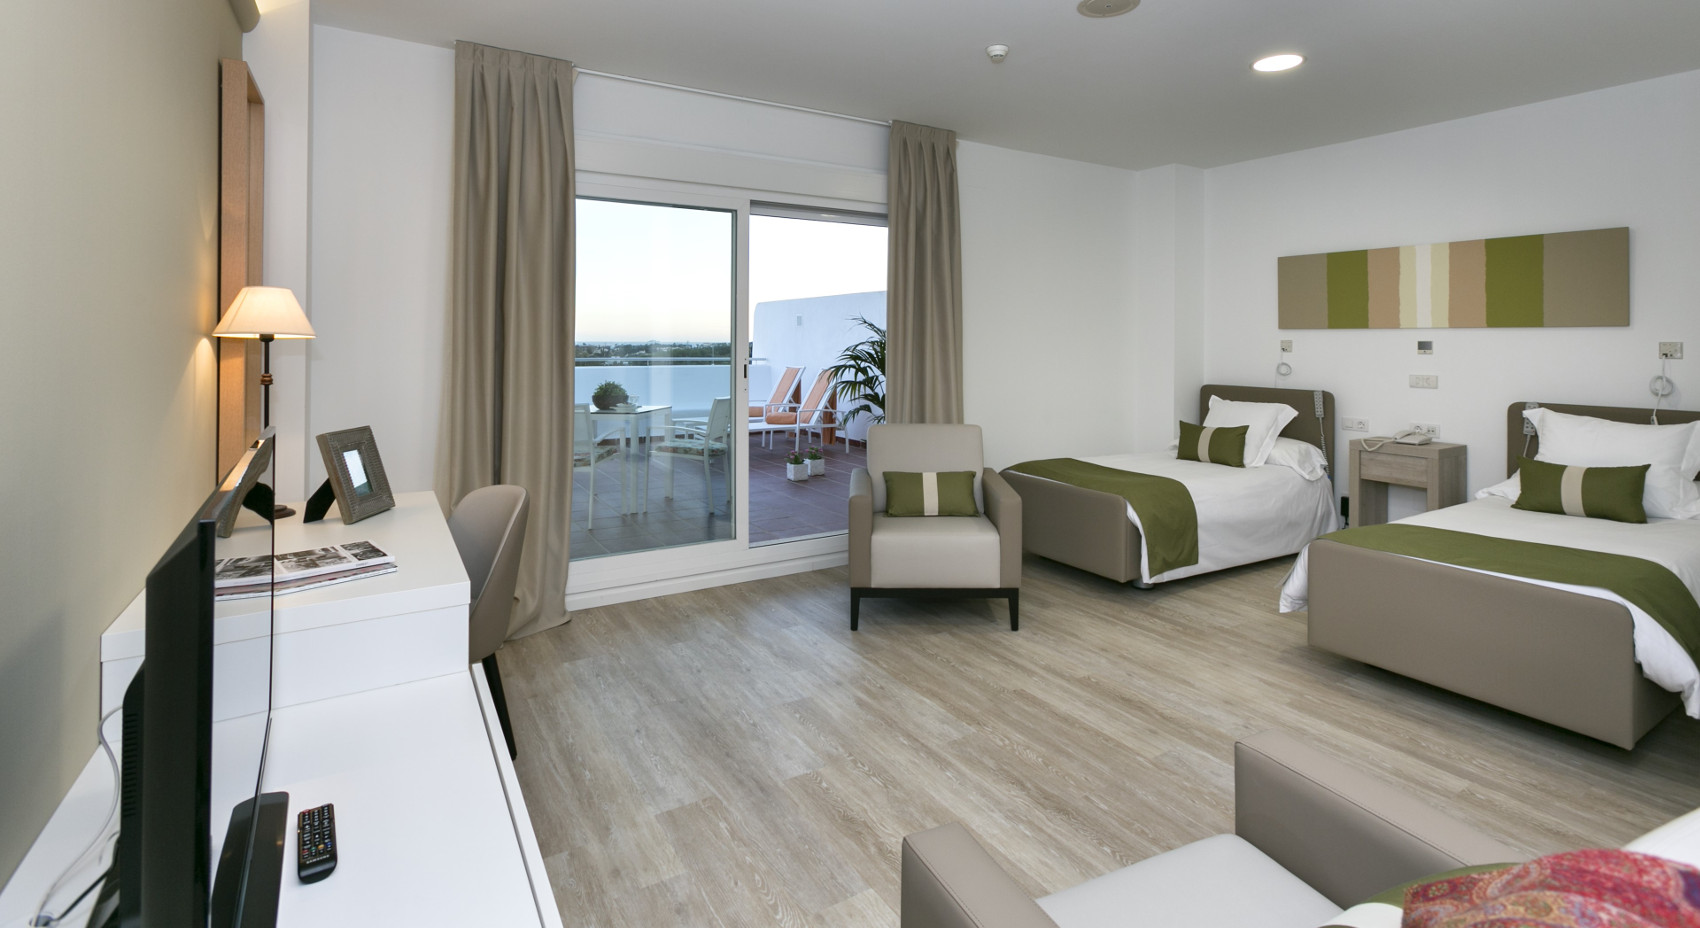 Habitación doble con terraza en residencia para mayores en marbella ck la quinta